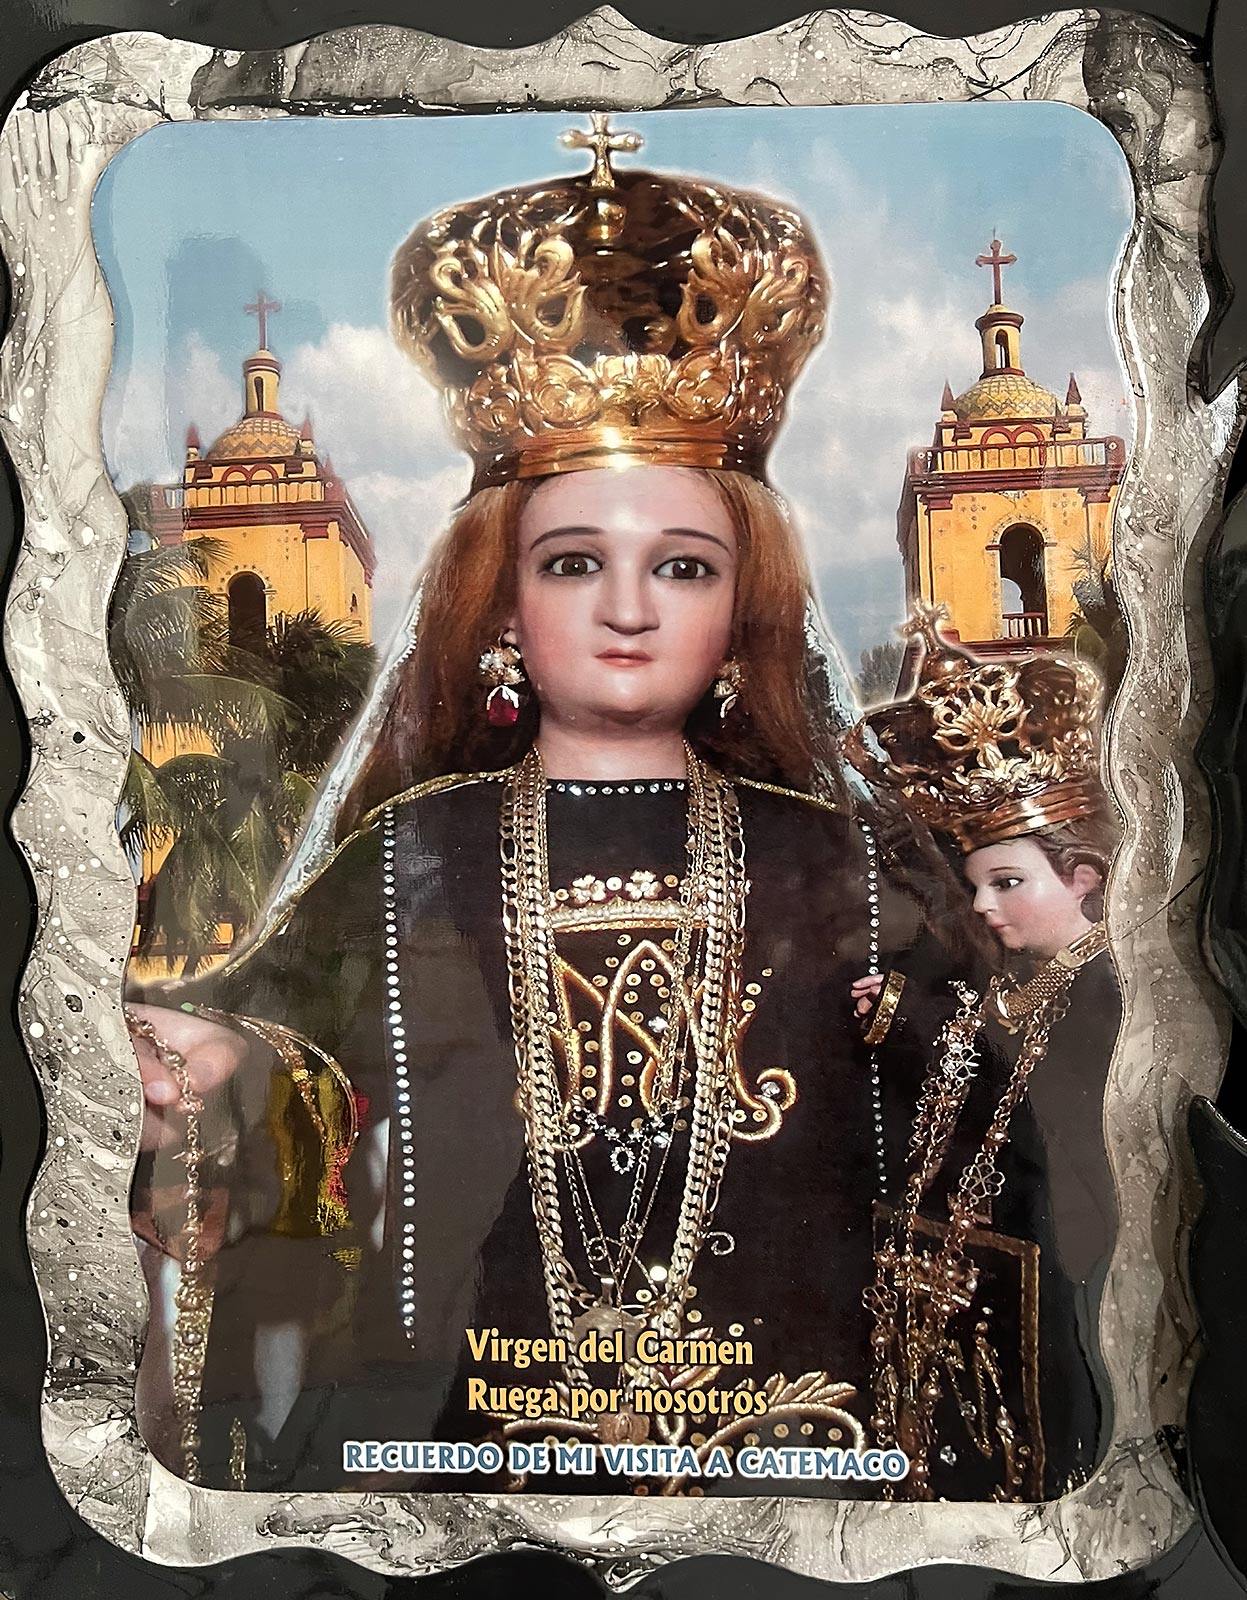 لوحة لتمثال معجزة لمريم تحمل الطفل يسوع ، مزار نويسترا سينورا ديل كارمن ، كاتيماكو